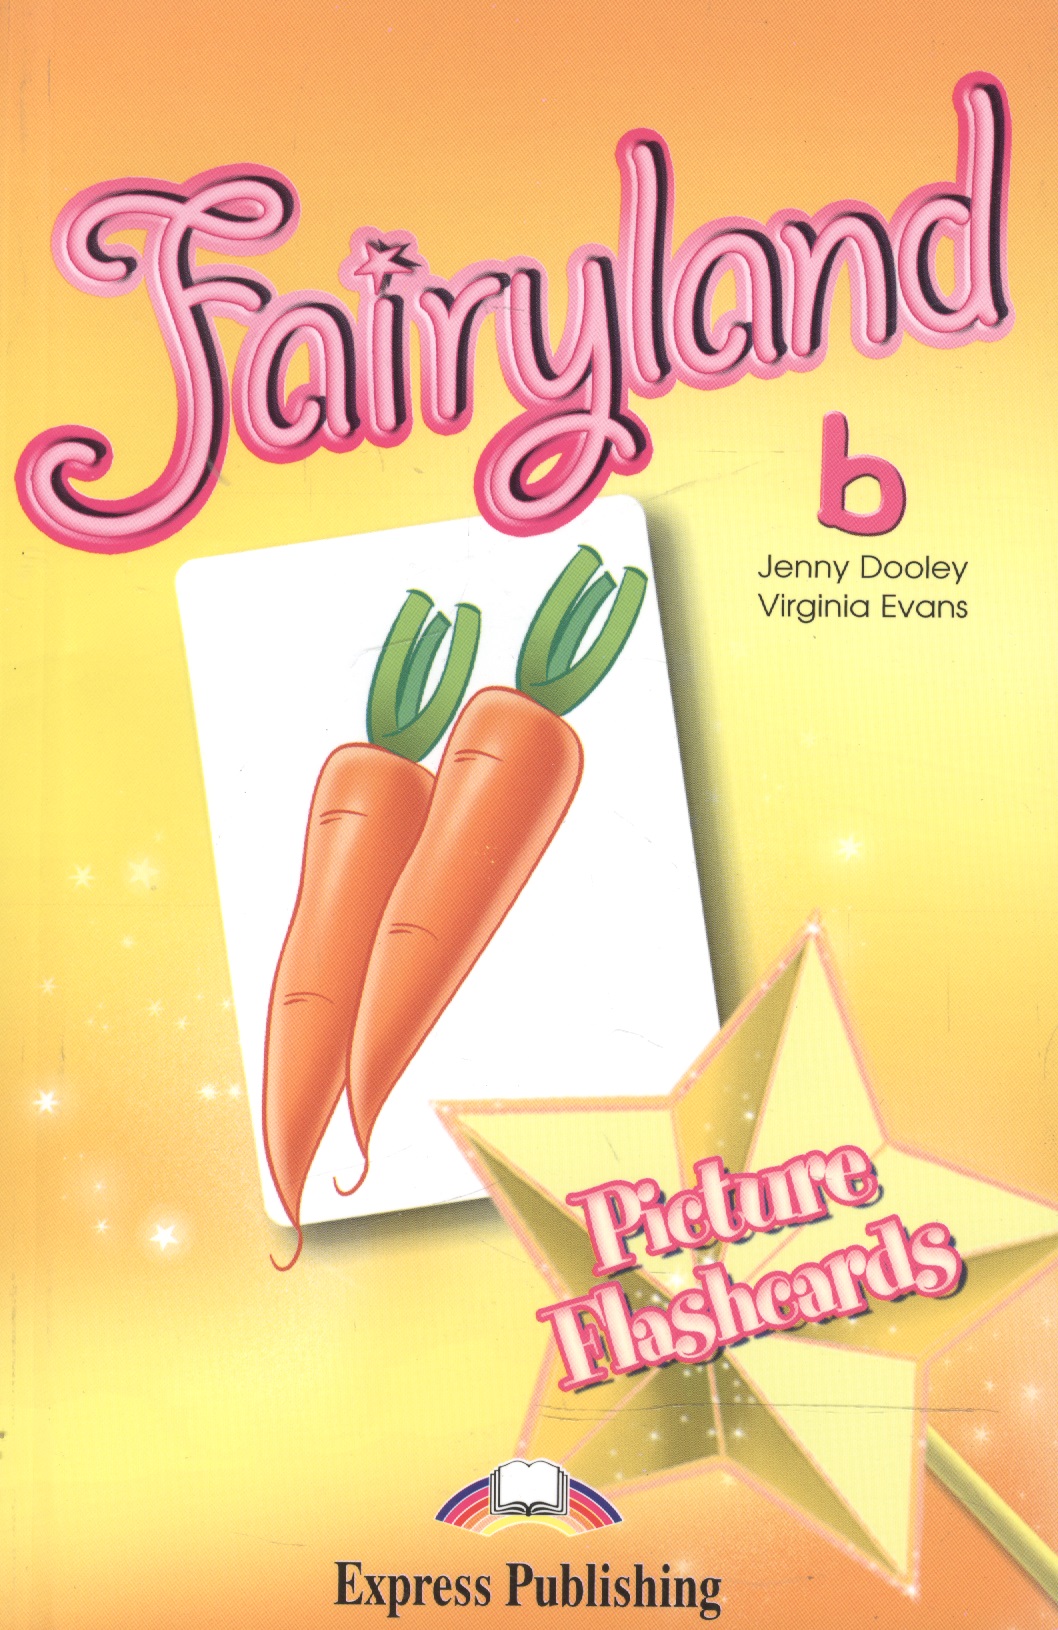 Эванс Вирджиния Fairyland 2. Picture Flashcards. Beginner. Раздаточный материал abc flashcards